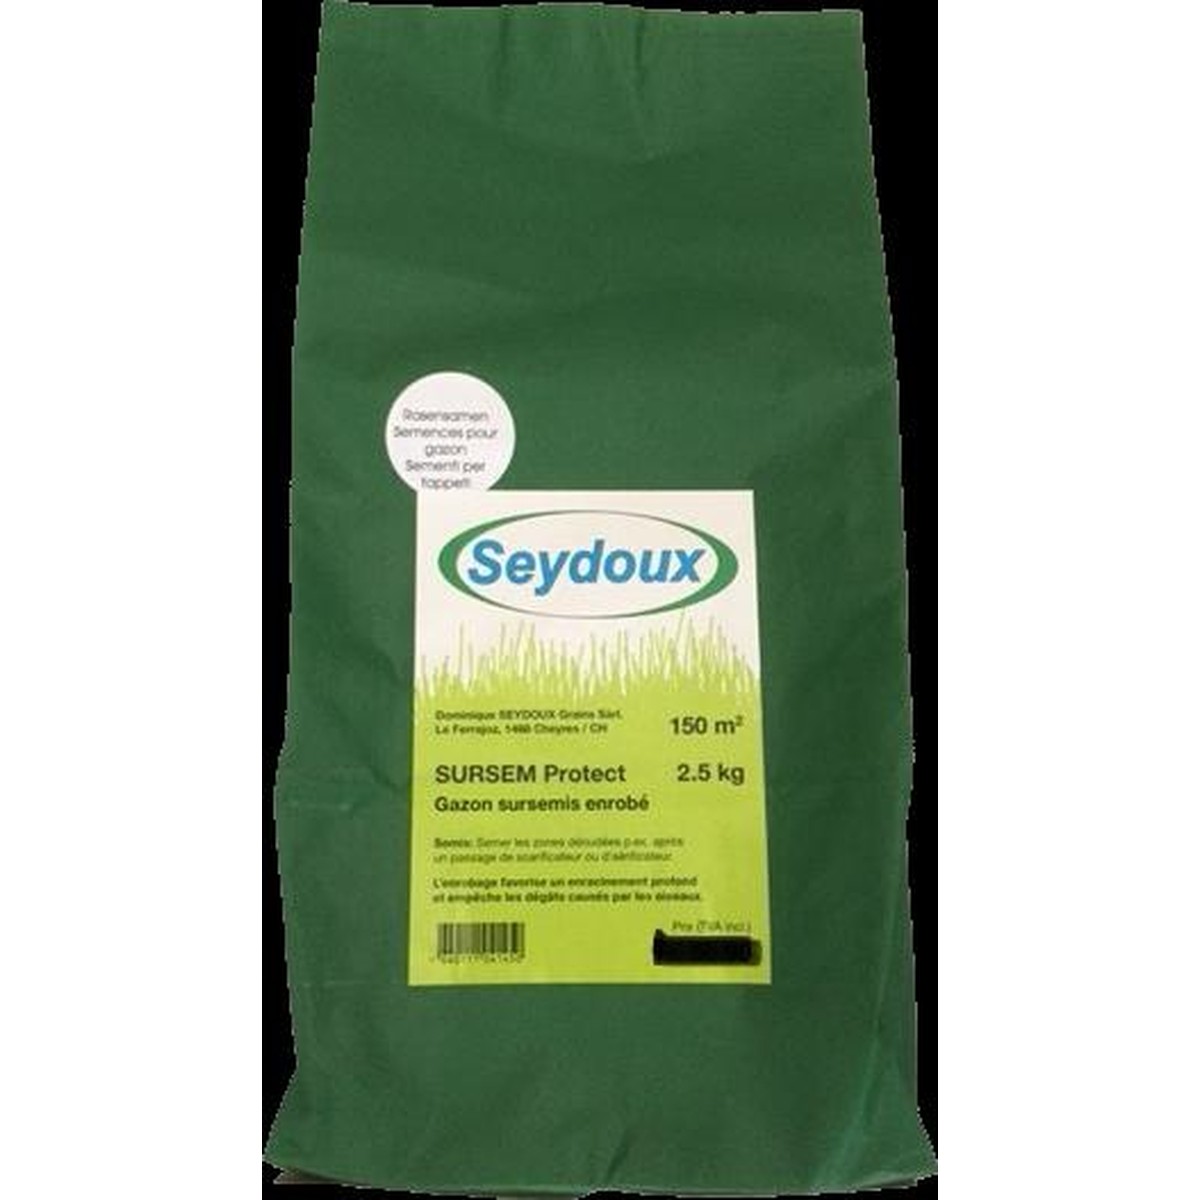 Seydoux D. Graines  Semence Sur Sem protect 2.5kg  